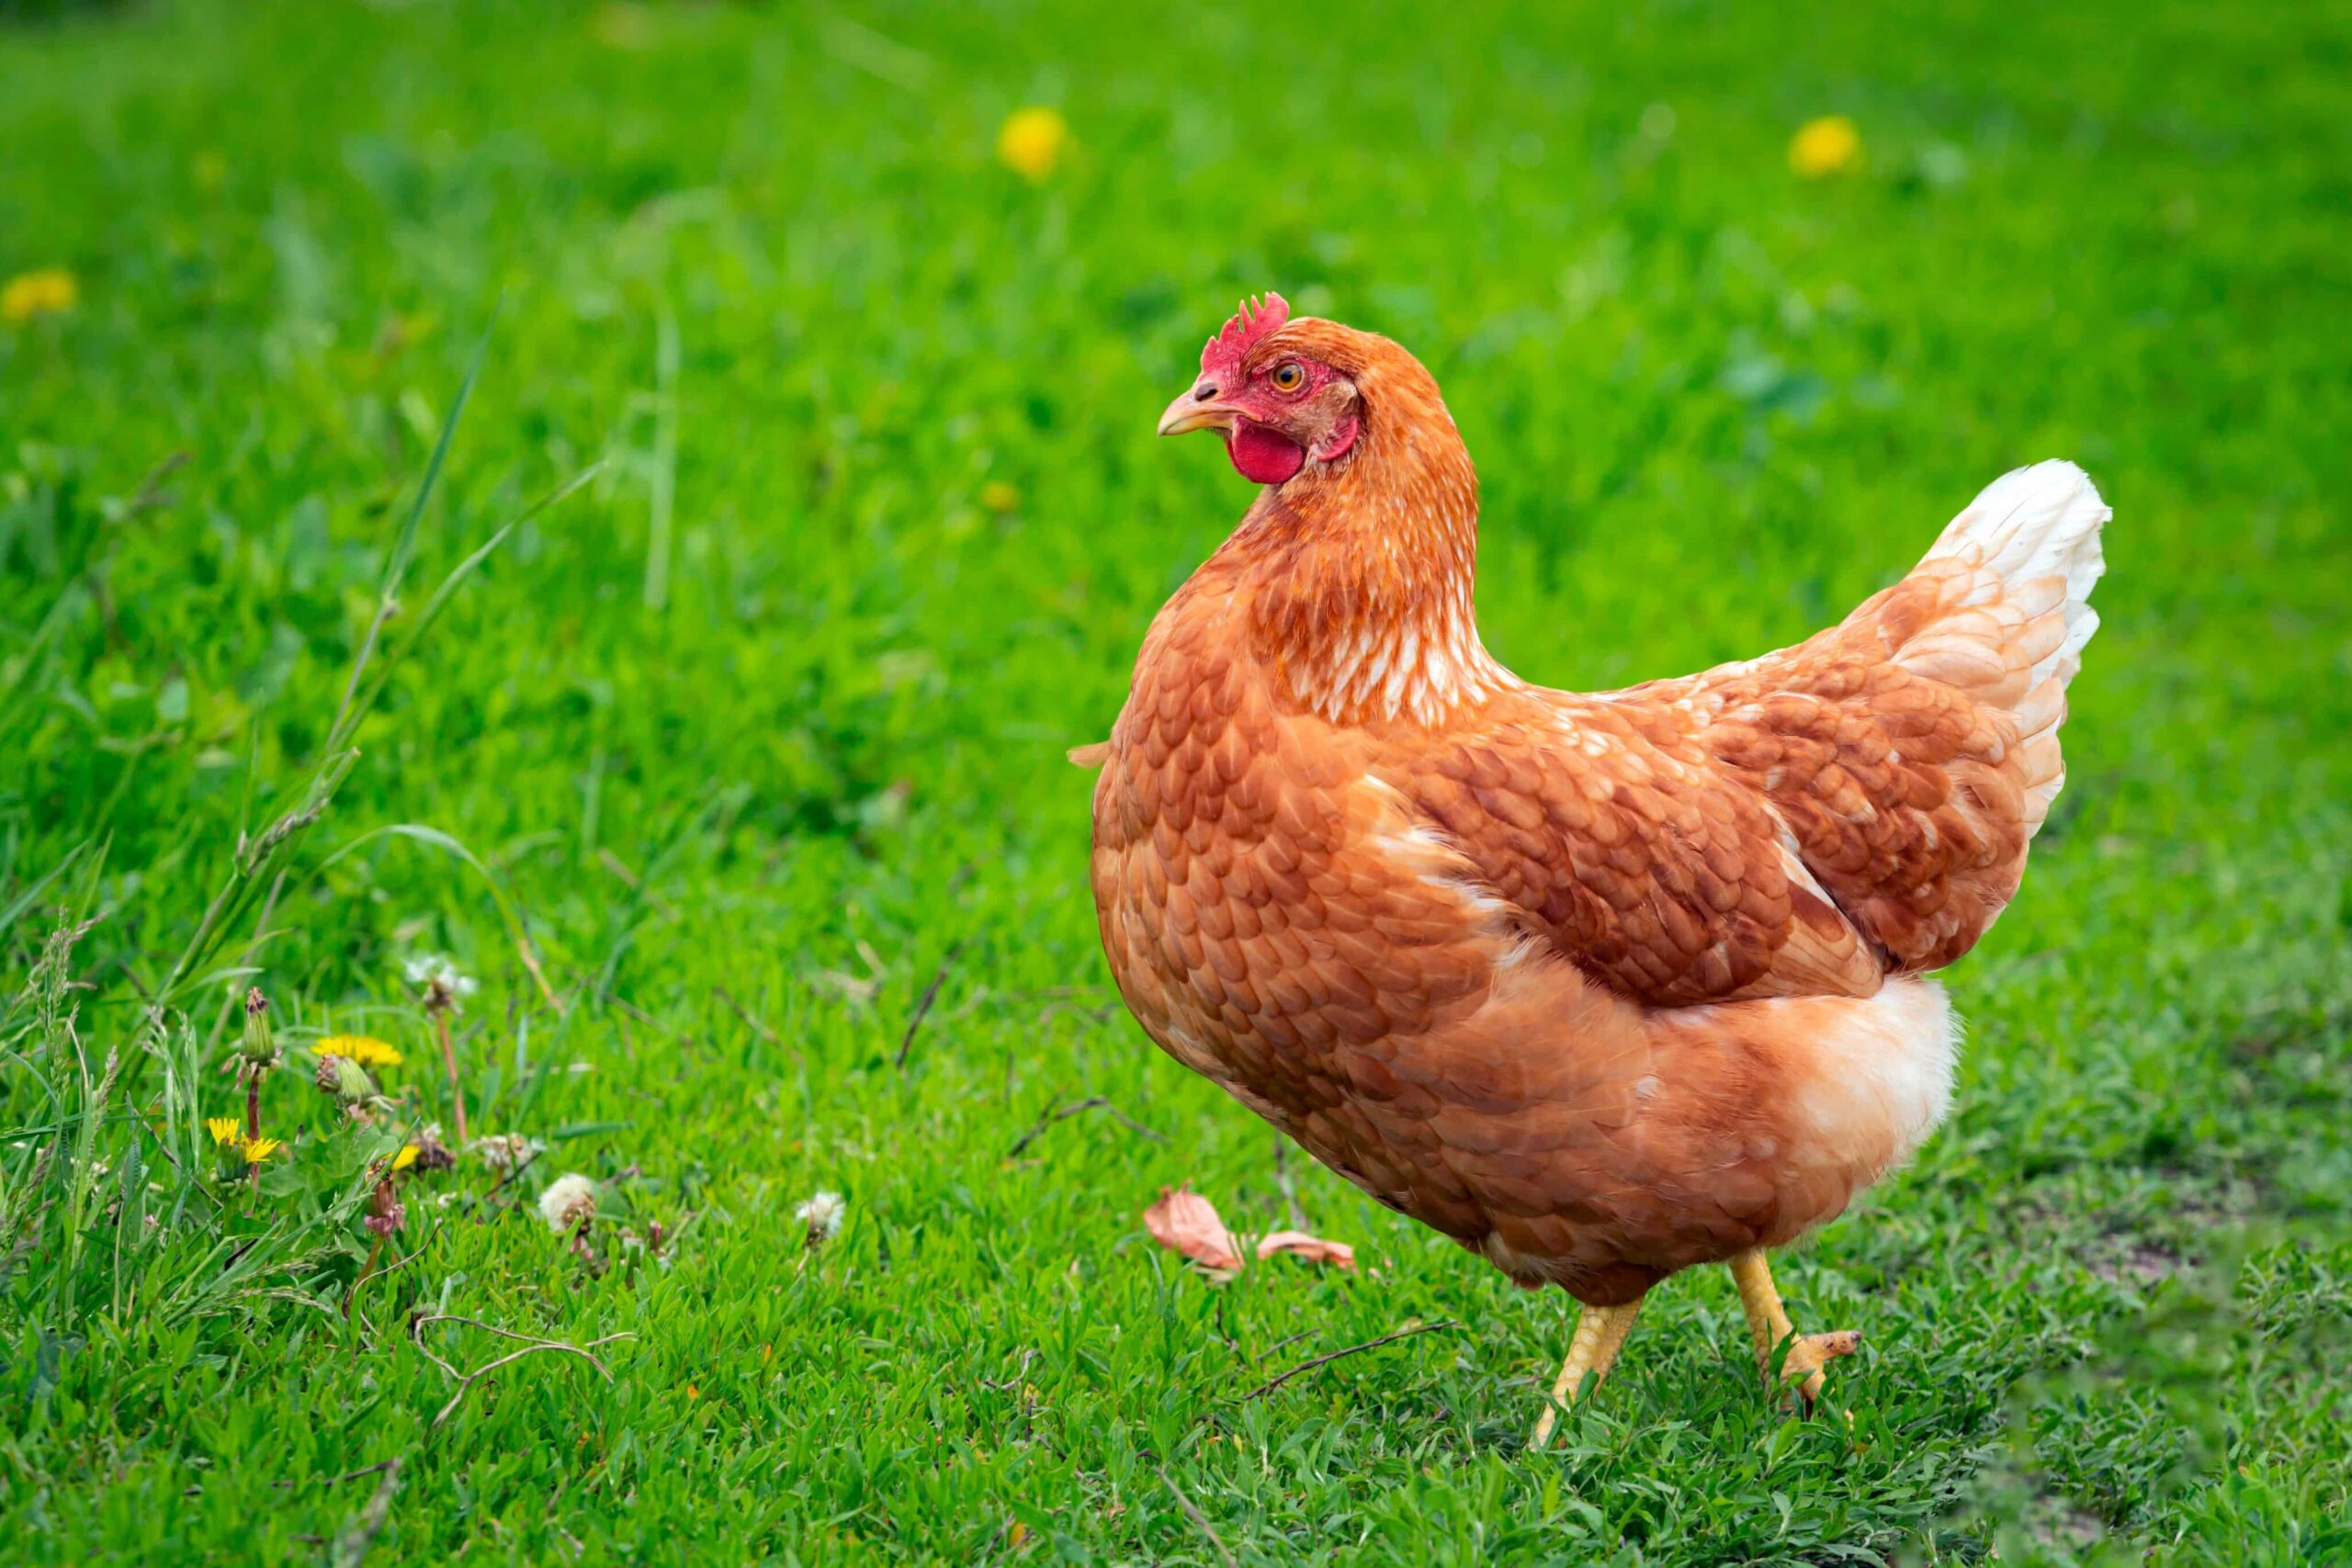 La harina de semillas de cáñamo para gallinas obtiene recomendación para aprobación federal